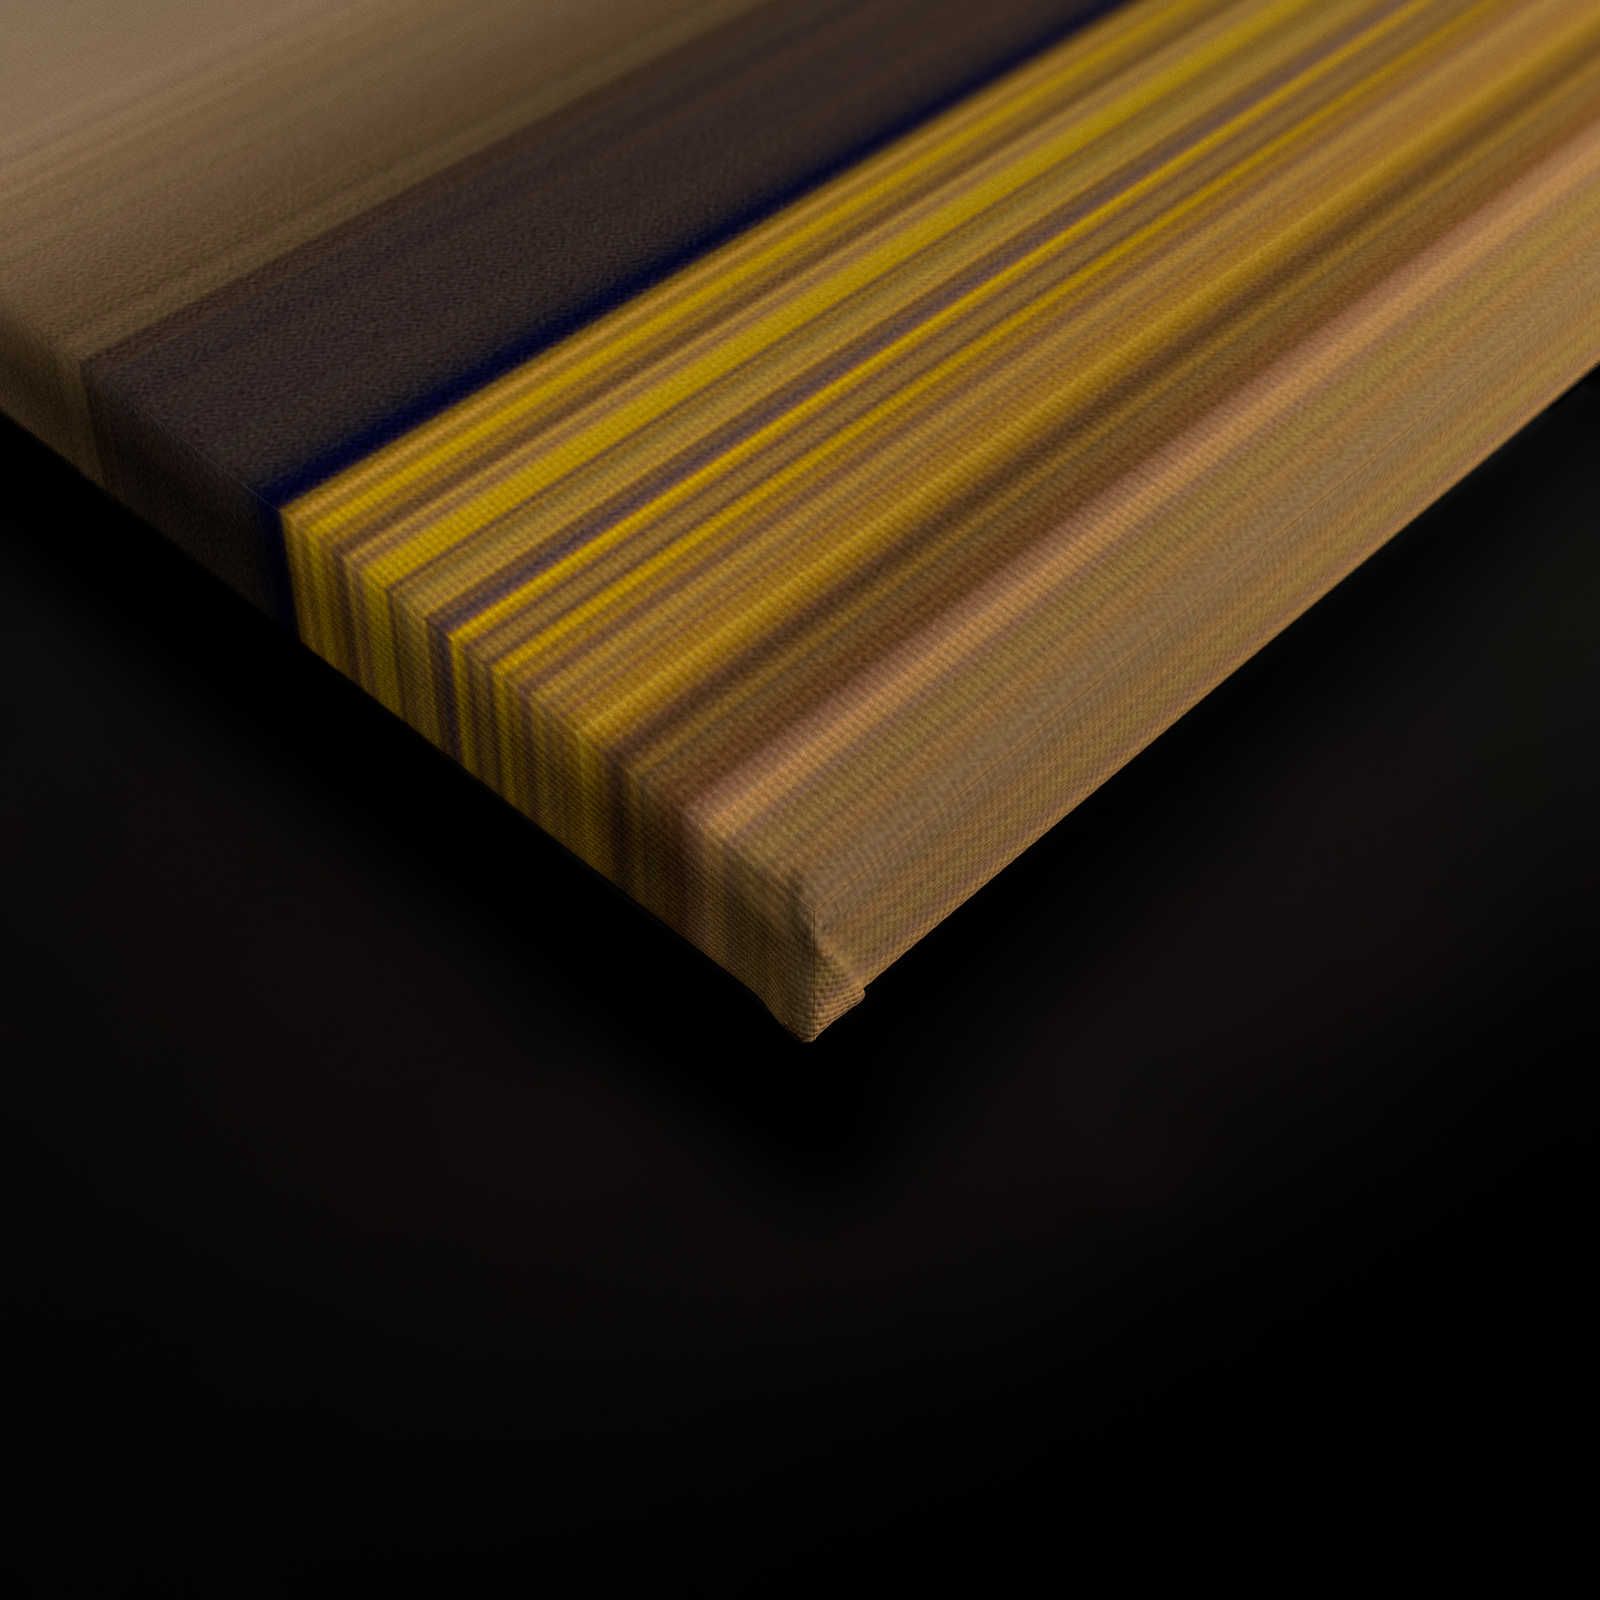             Horizon 3 - Toile Paysage abstrait avec dessin en couleur - 0,90 m x 0,60 m
        